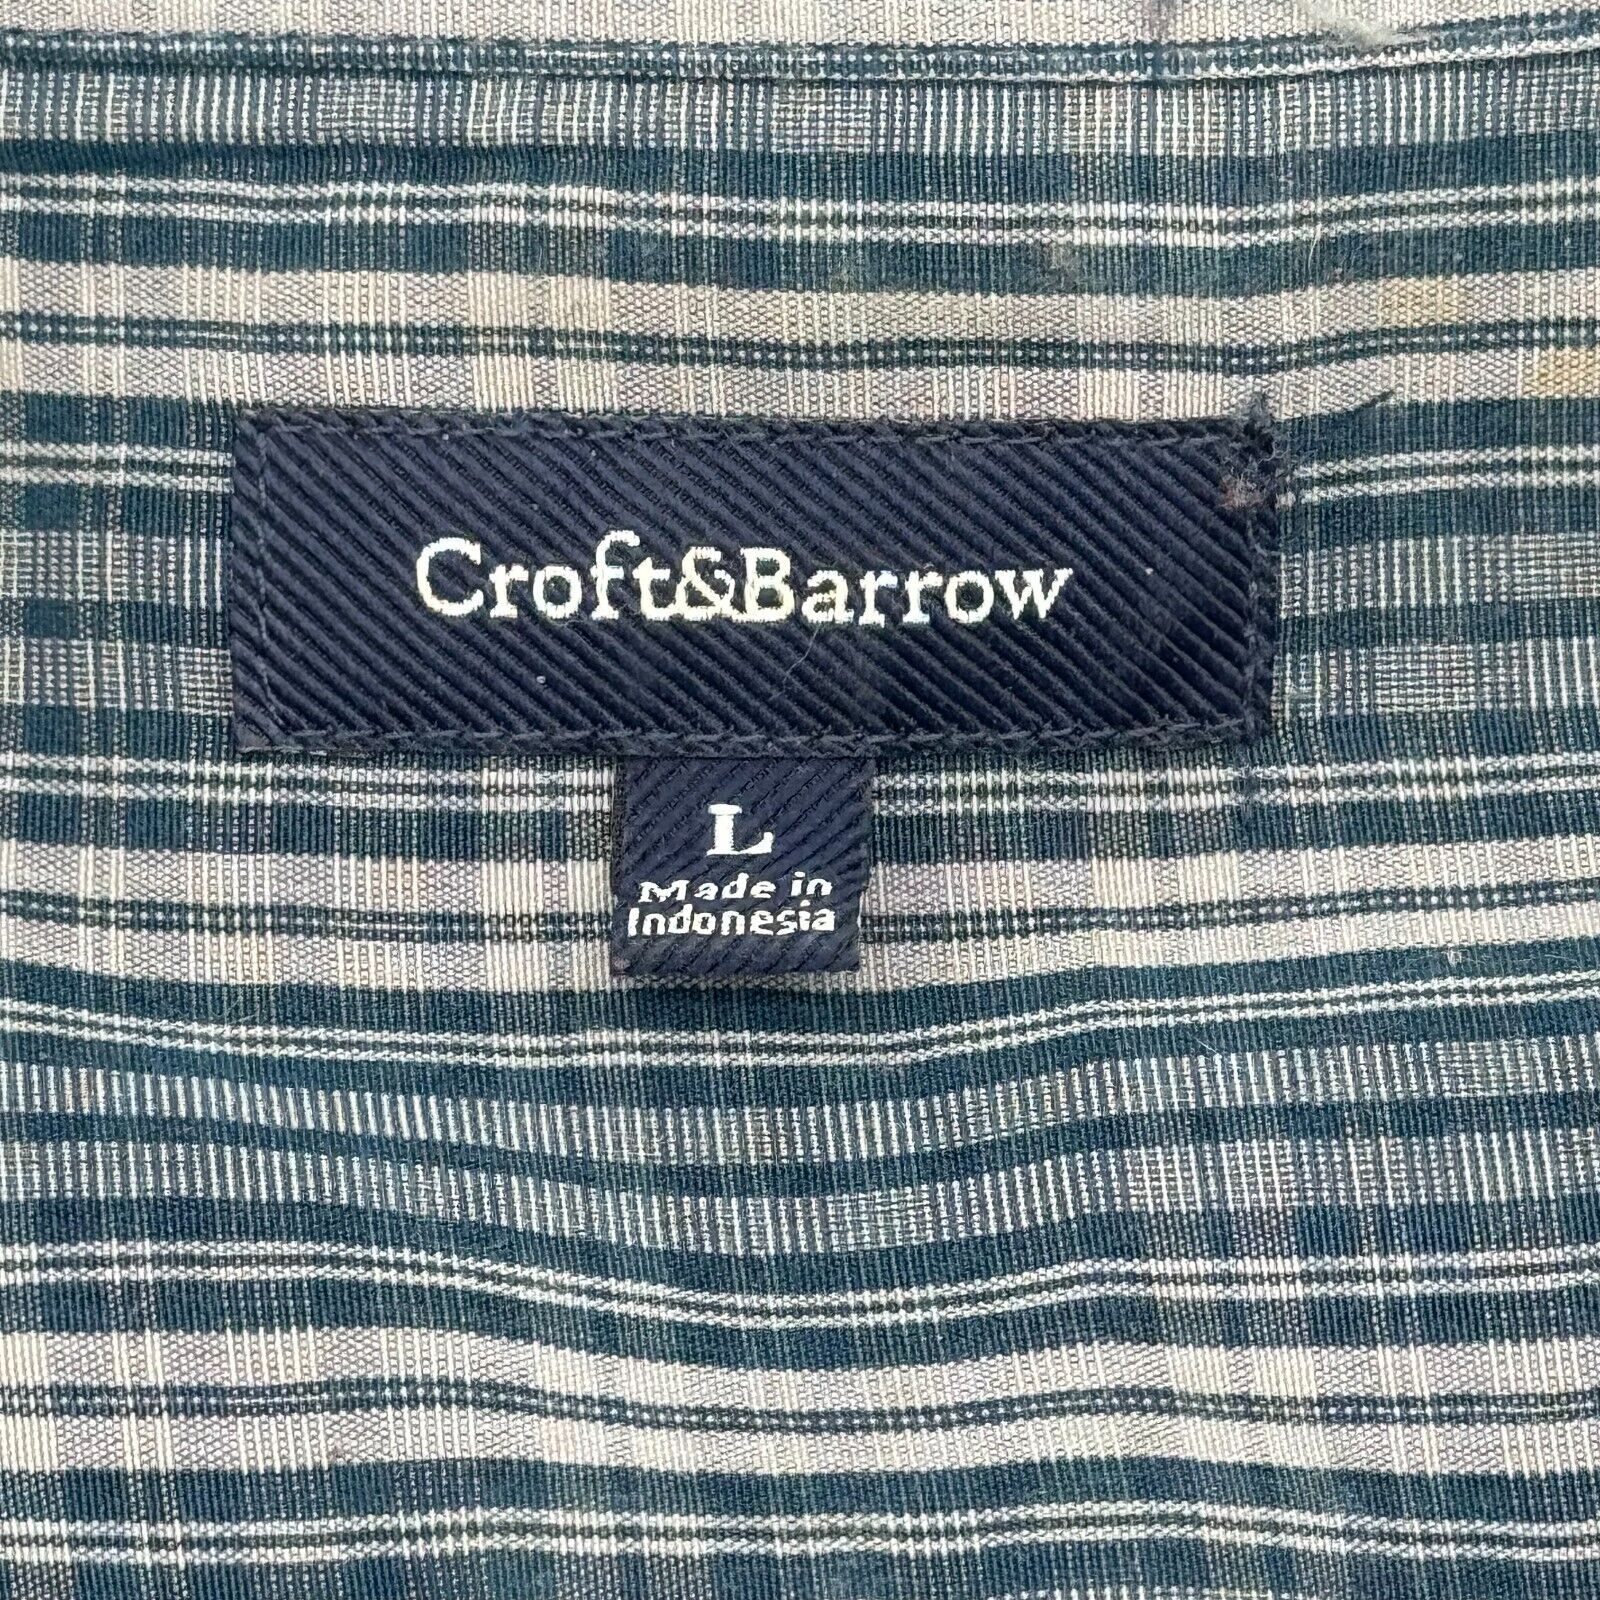 Croft & Barrow Green Tan Checkered Button Up Short Sleeve Shirt Men L